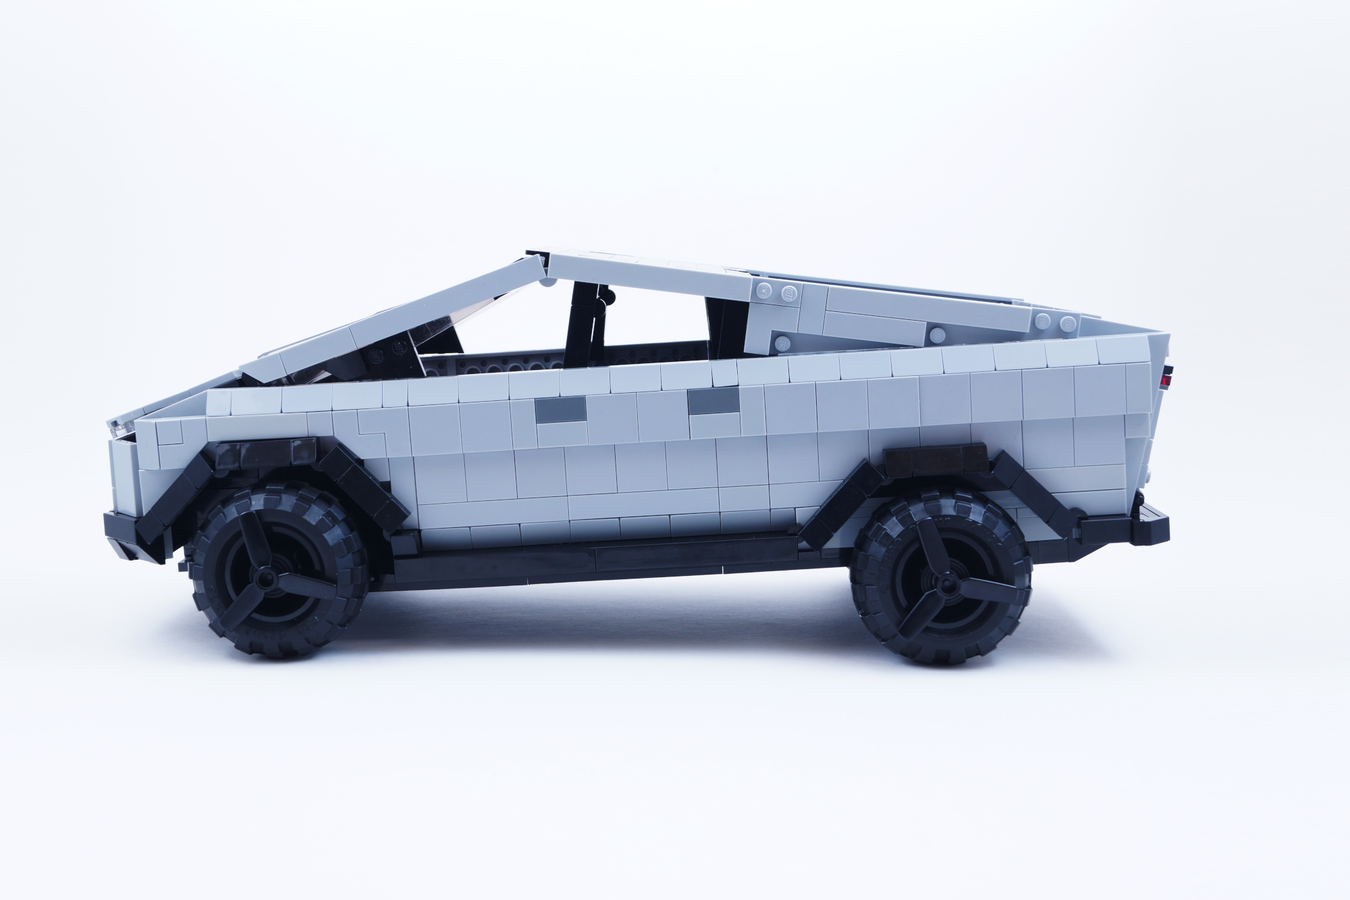 레고의 패러디 사이버트럭과는 다르다~ 레고 아이디어스에 등록된 리얼한 테슬라 사이버트럭 디자인...